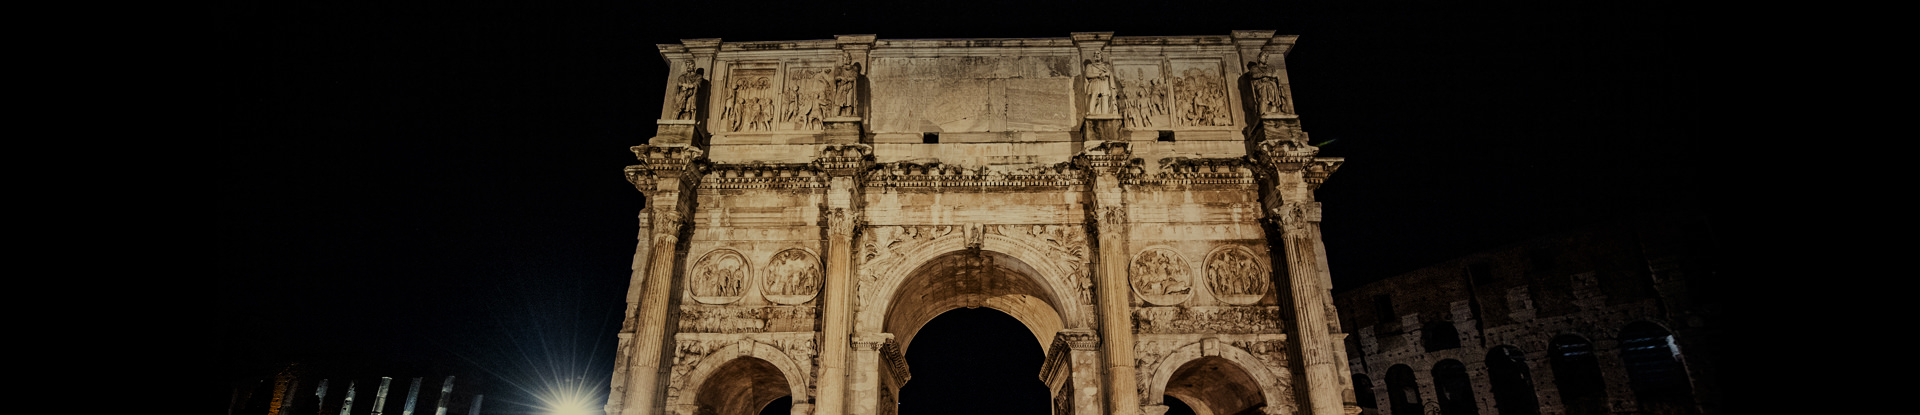 Acea, l'illuminazione artistica dell'Arco di Costantino